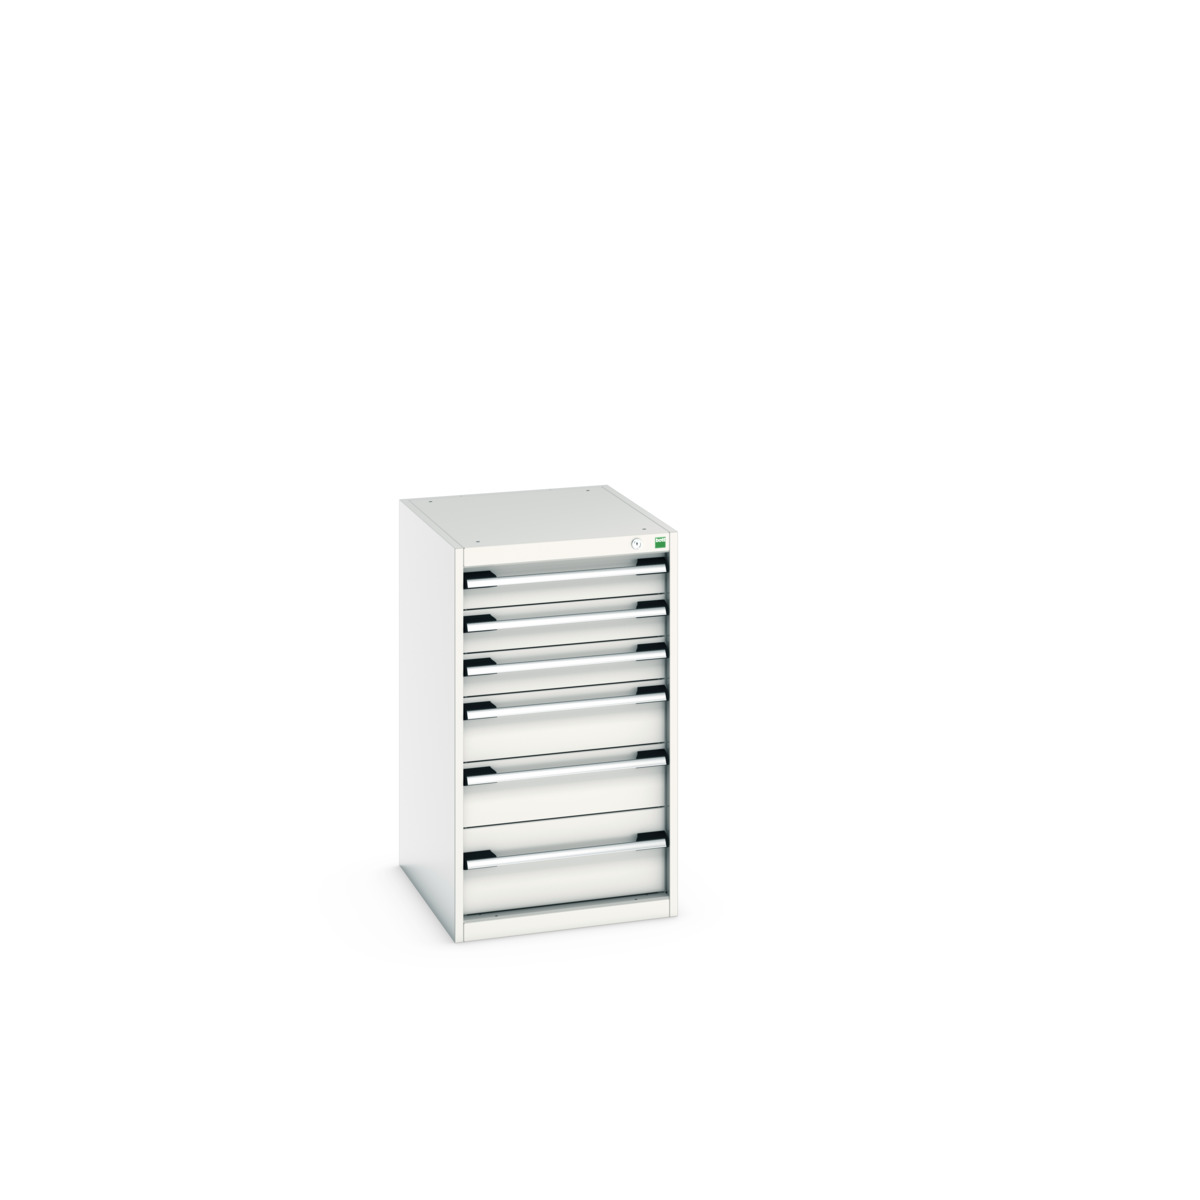 40018049.16V - cubio drawer cabinet